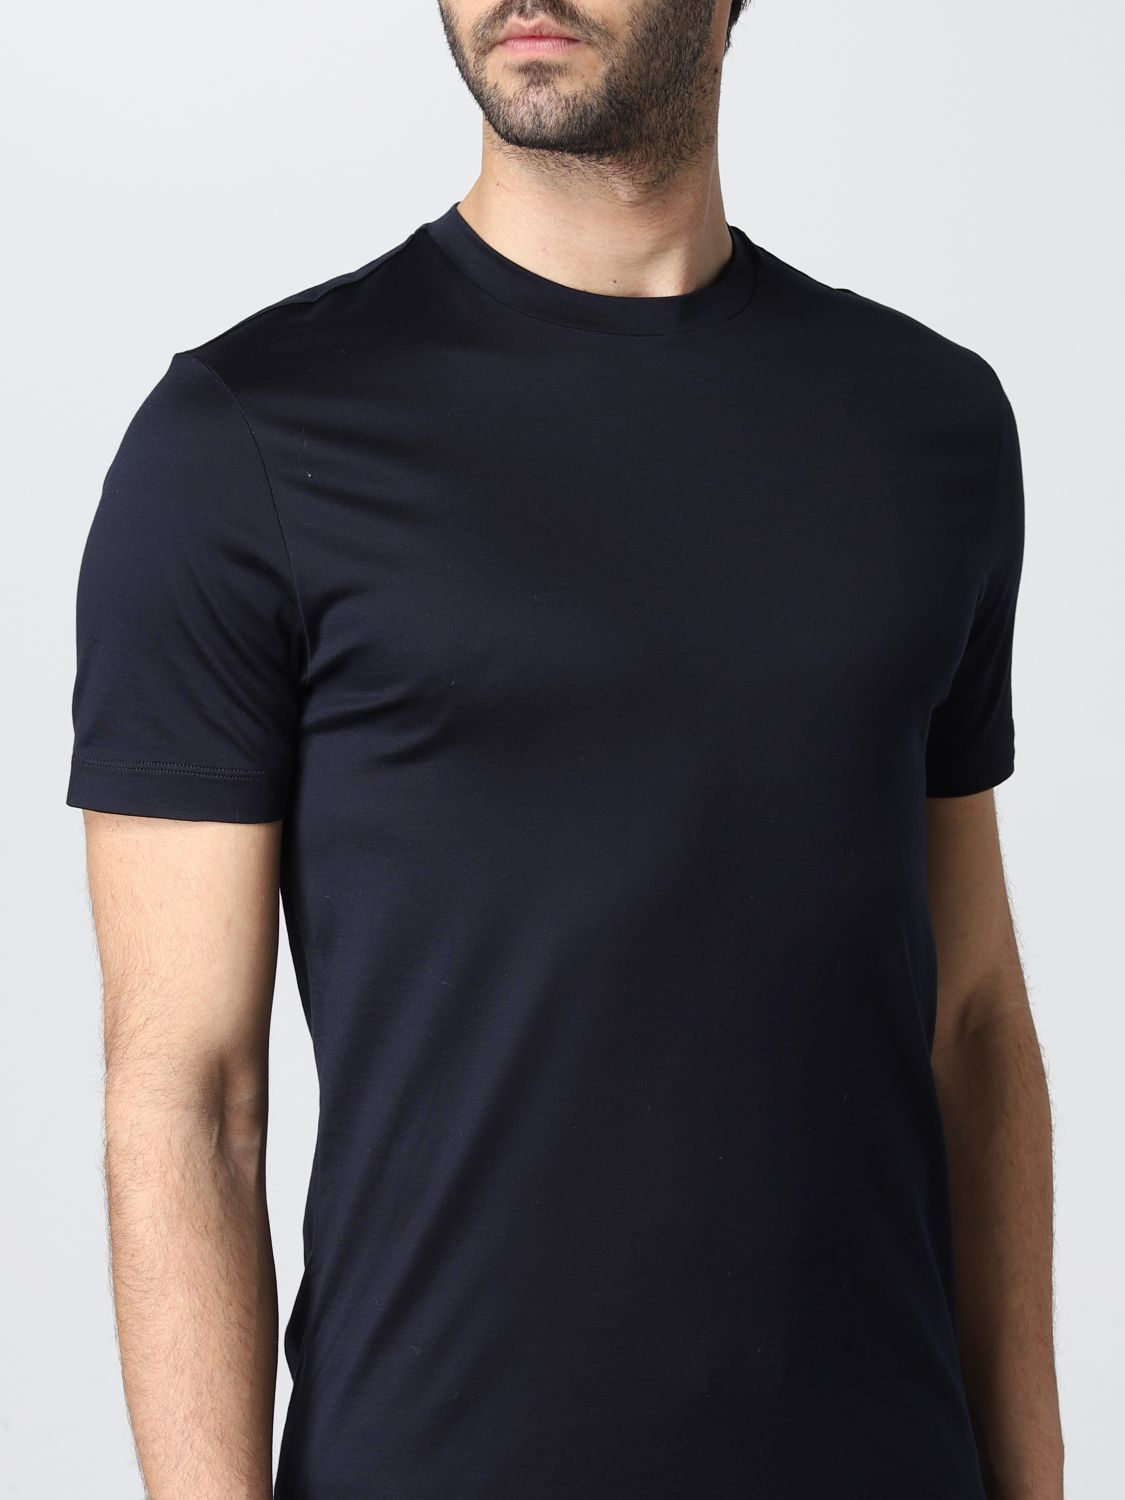 Camiseta Giorgio Armani: Camiseta hombre Giorgio Armani azul oscuro 5